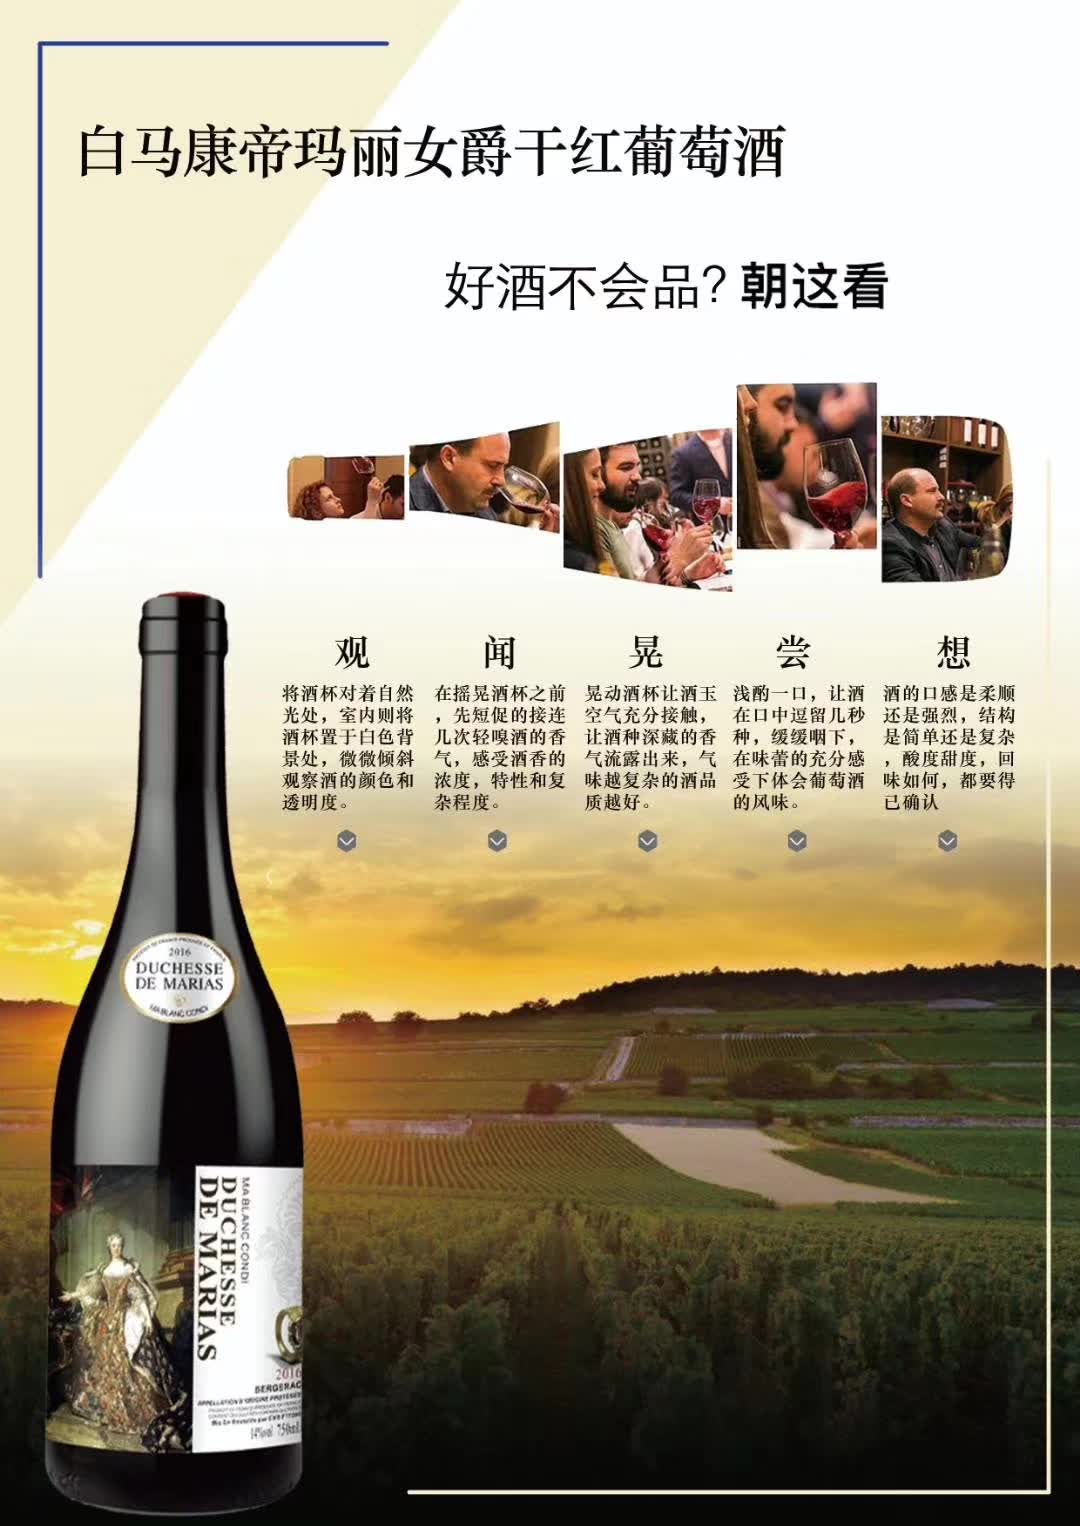 上海万耀贸易白马康帝系列玛丽女爵法国AOC级别葡萄酒代理加盟混酿葡萄酒